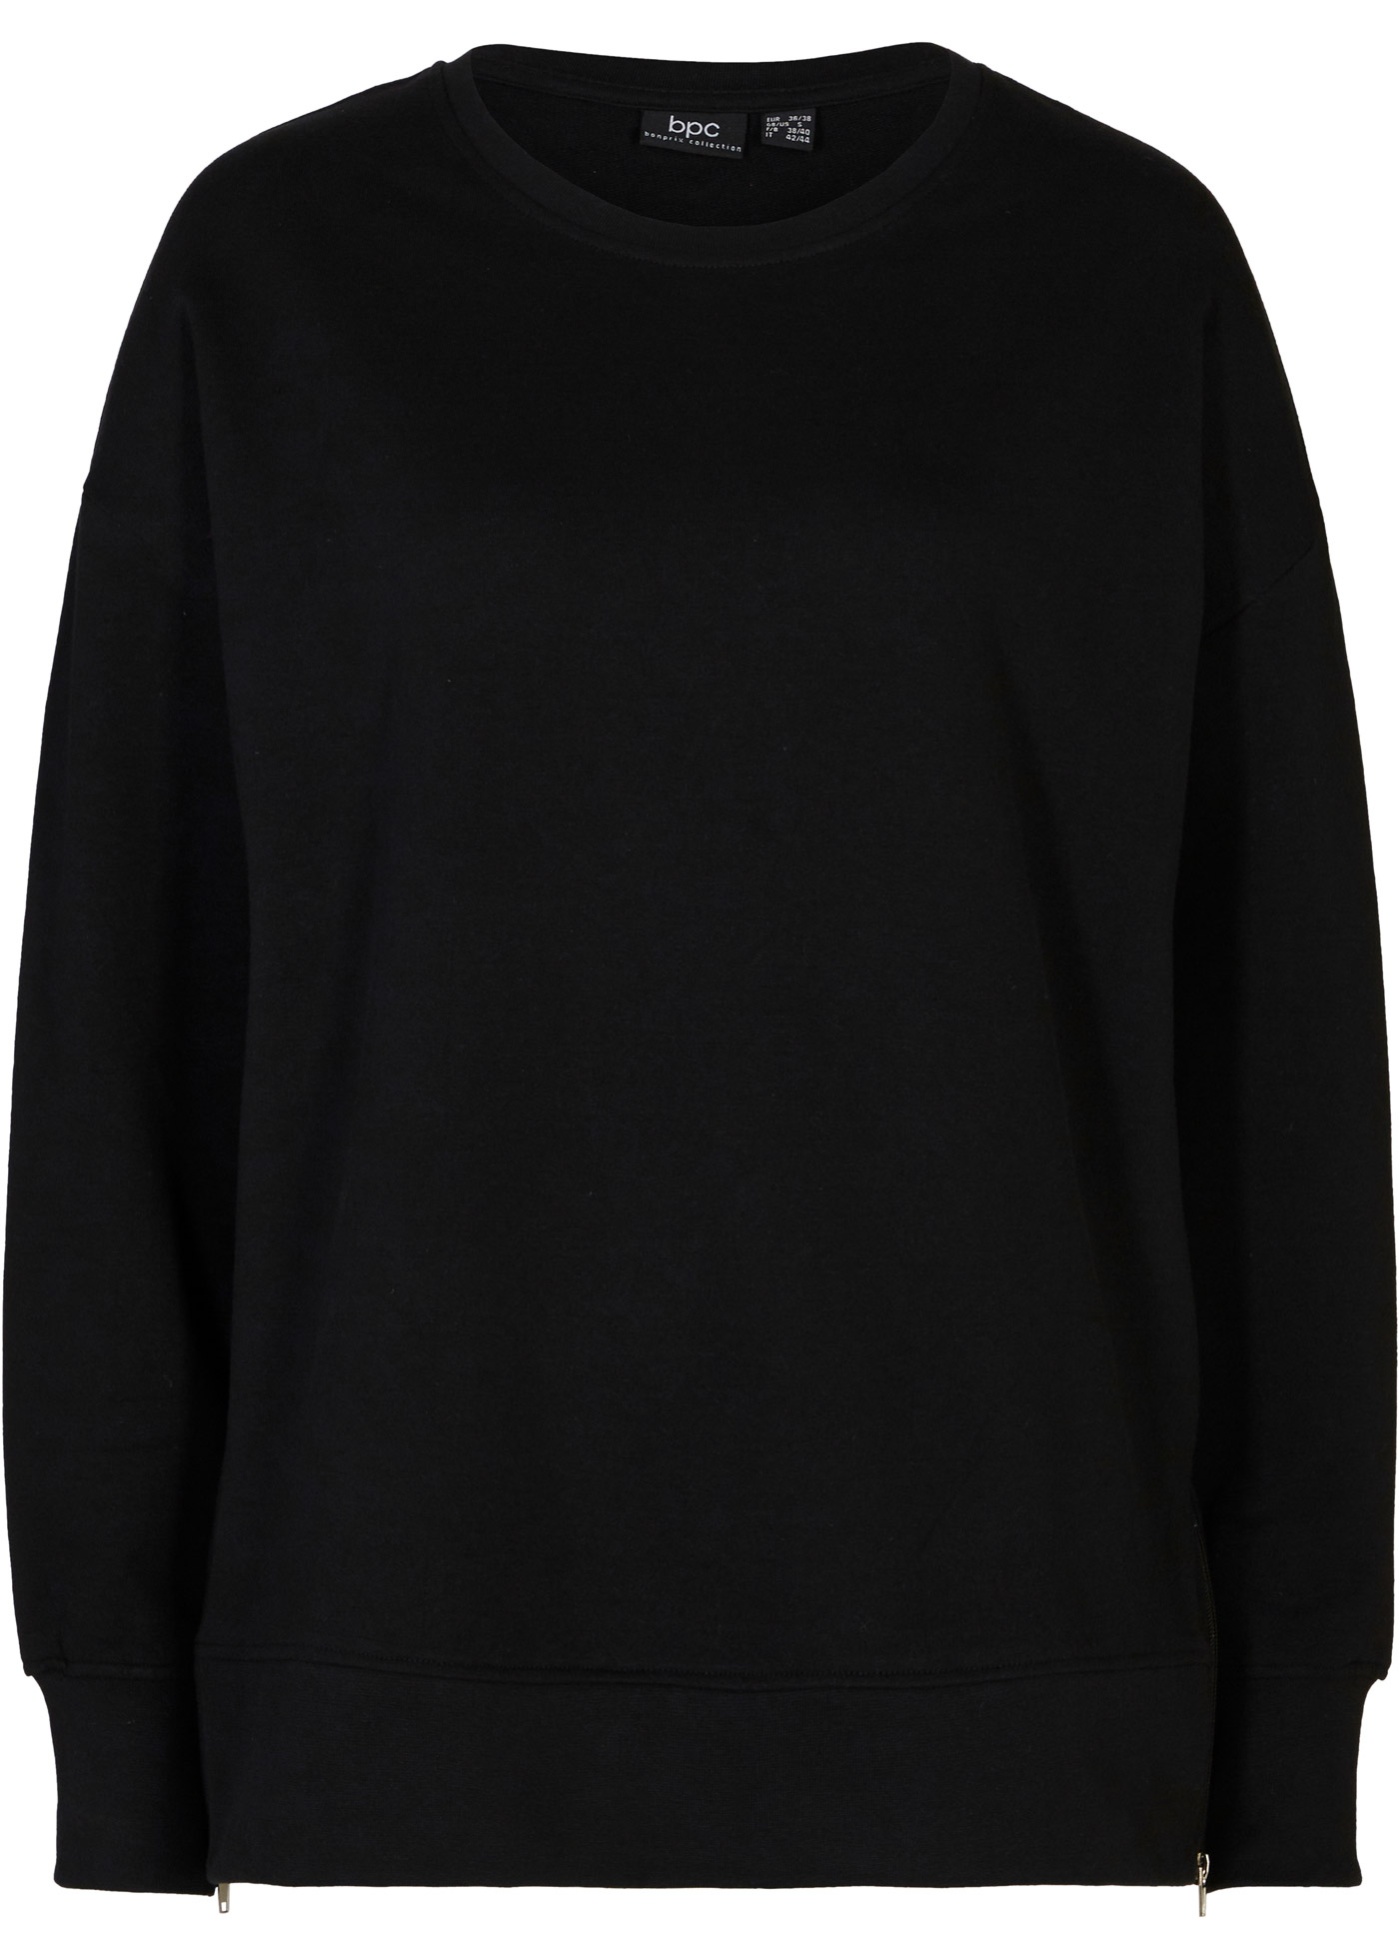 Bequemes Sweatshirt mit modischen Reißverschluss-Schlitzen an den Seiten. (97001895) in schwarz